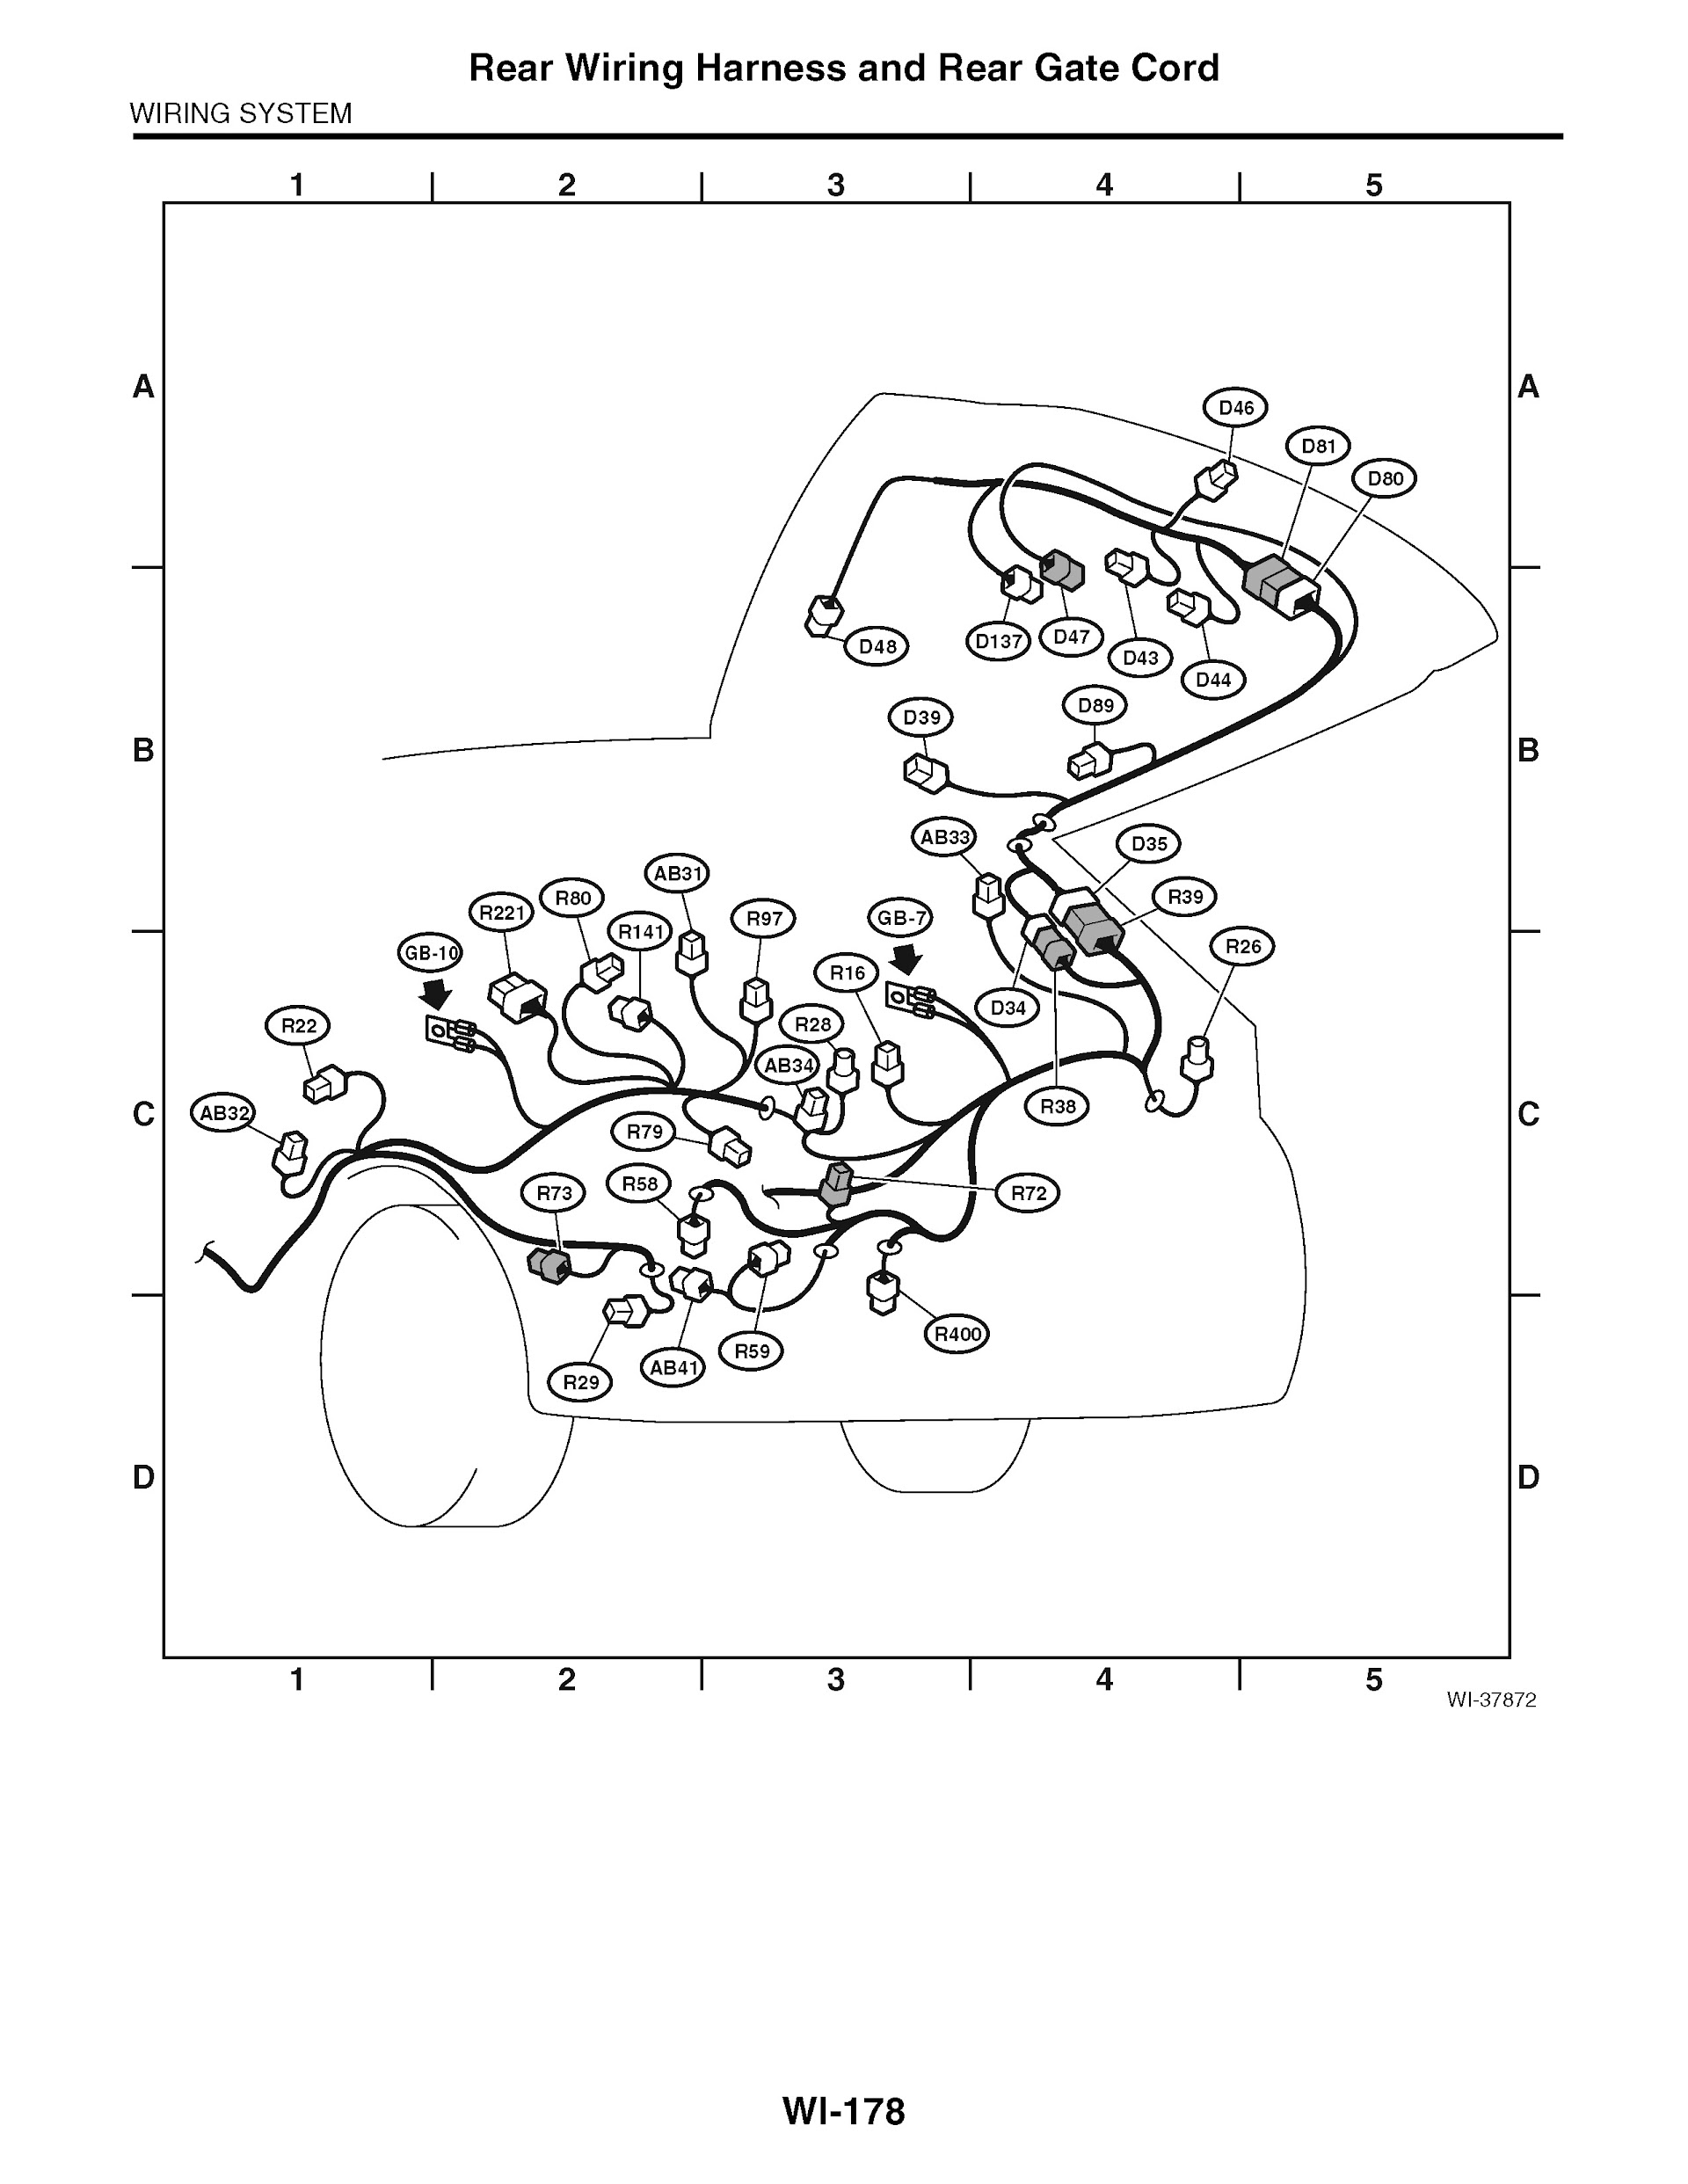 2013 Subaru Impreza & XV Crosstrek Repair Manual, Rear Wiring Harness